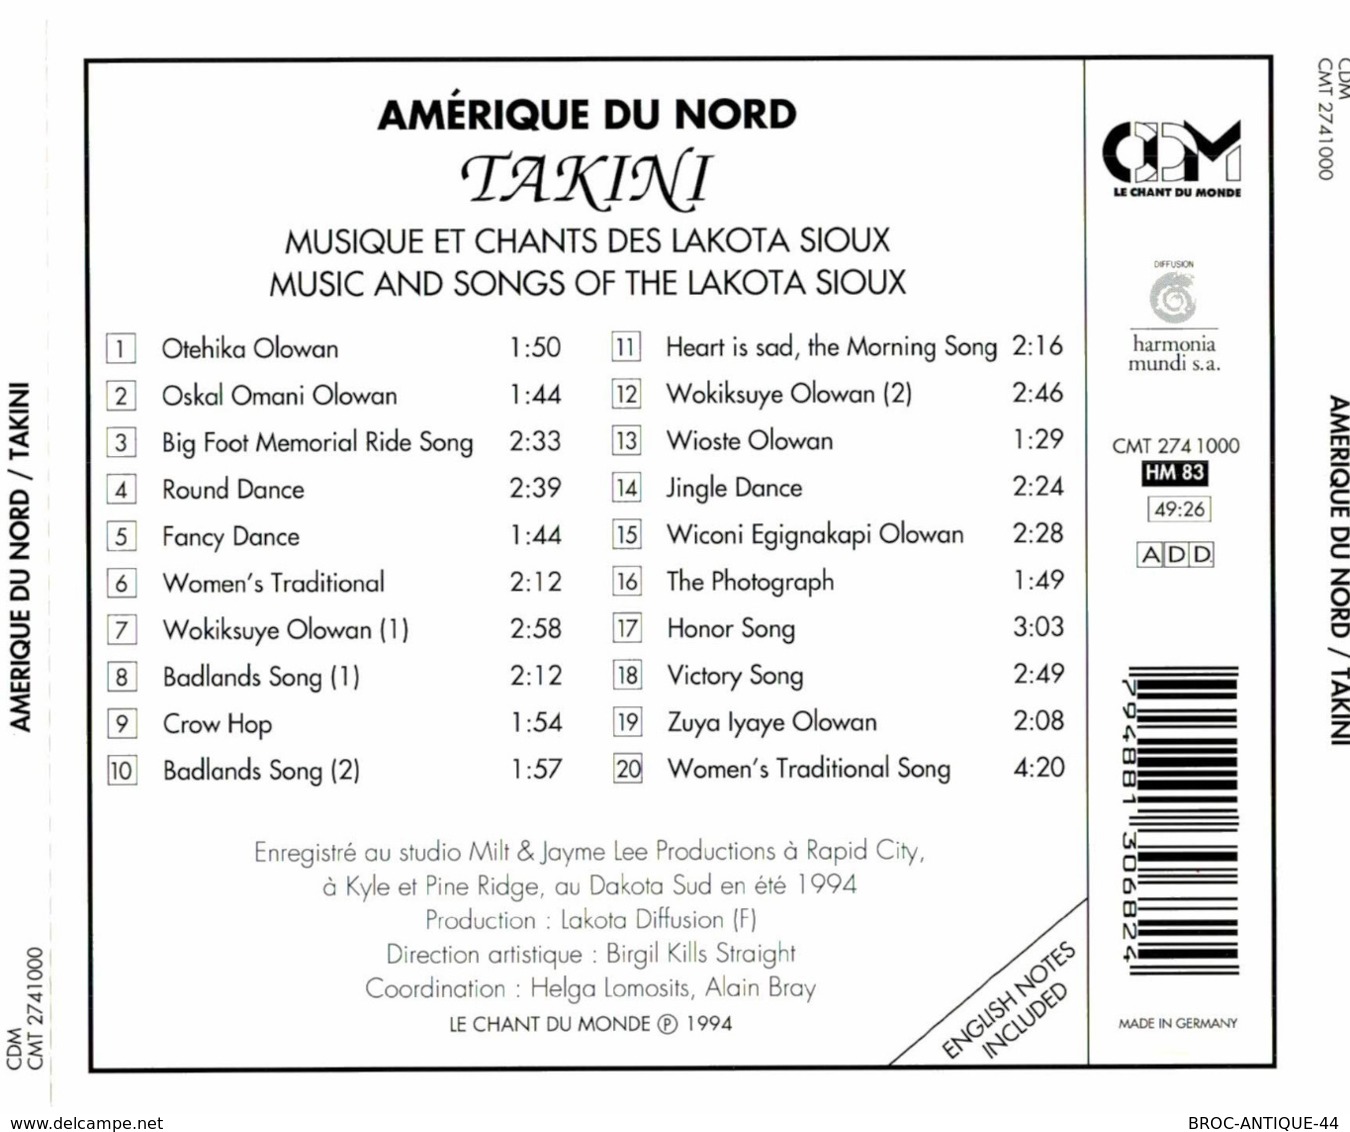 CD N°2557 - AMERIQUE DU NORD - TAKINI - MUSIQUE ET CHANTS DES LAKOTA SIOUX -  COMPILATION 10 TITRES - World Music